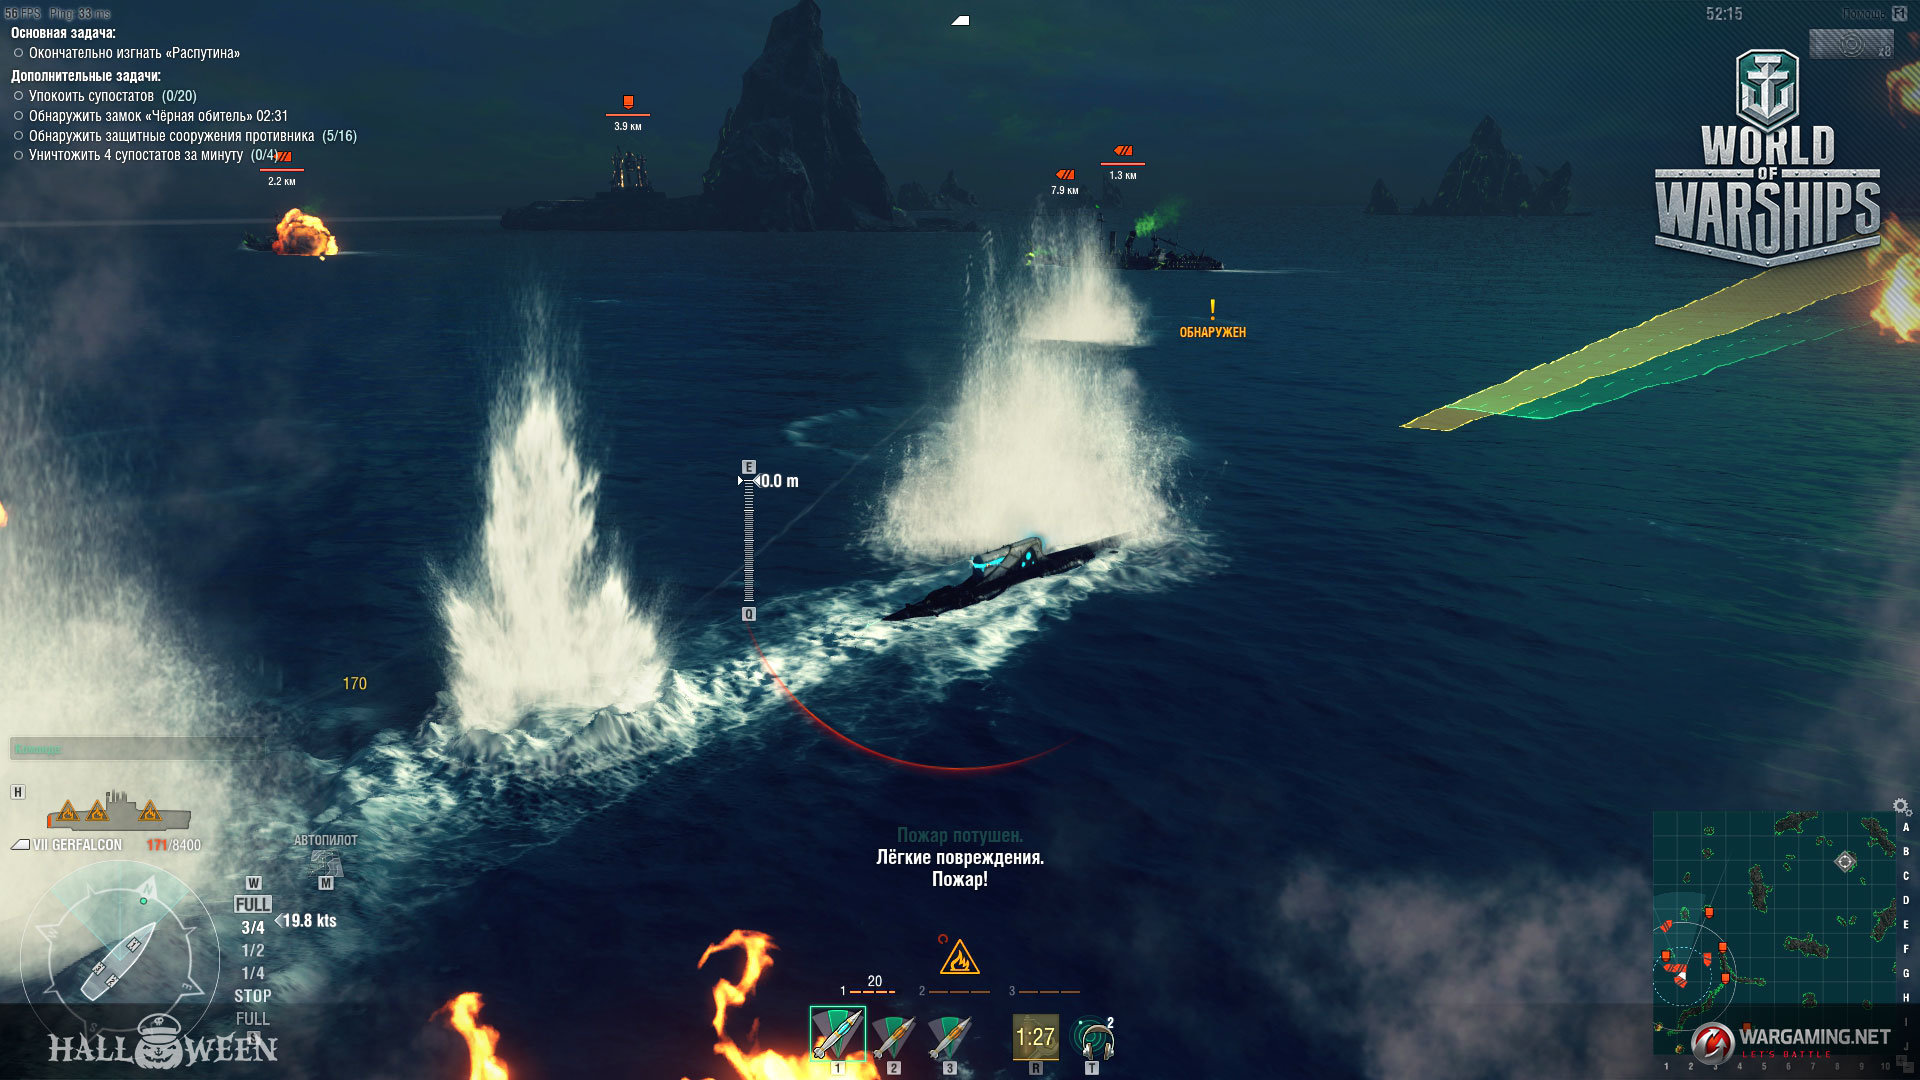 Gameplay-Szenen des Halloween-Events mit U-Booten.